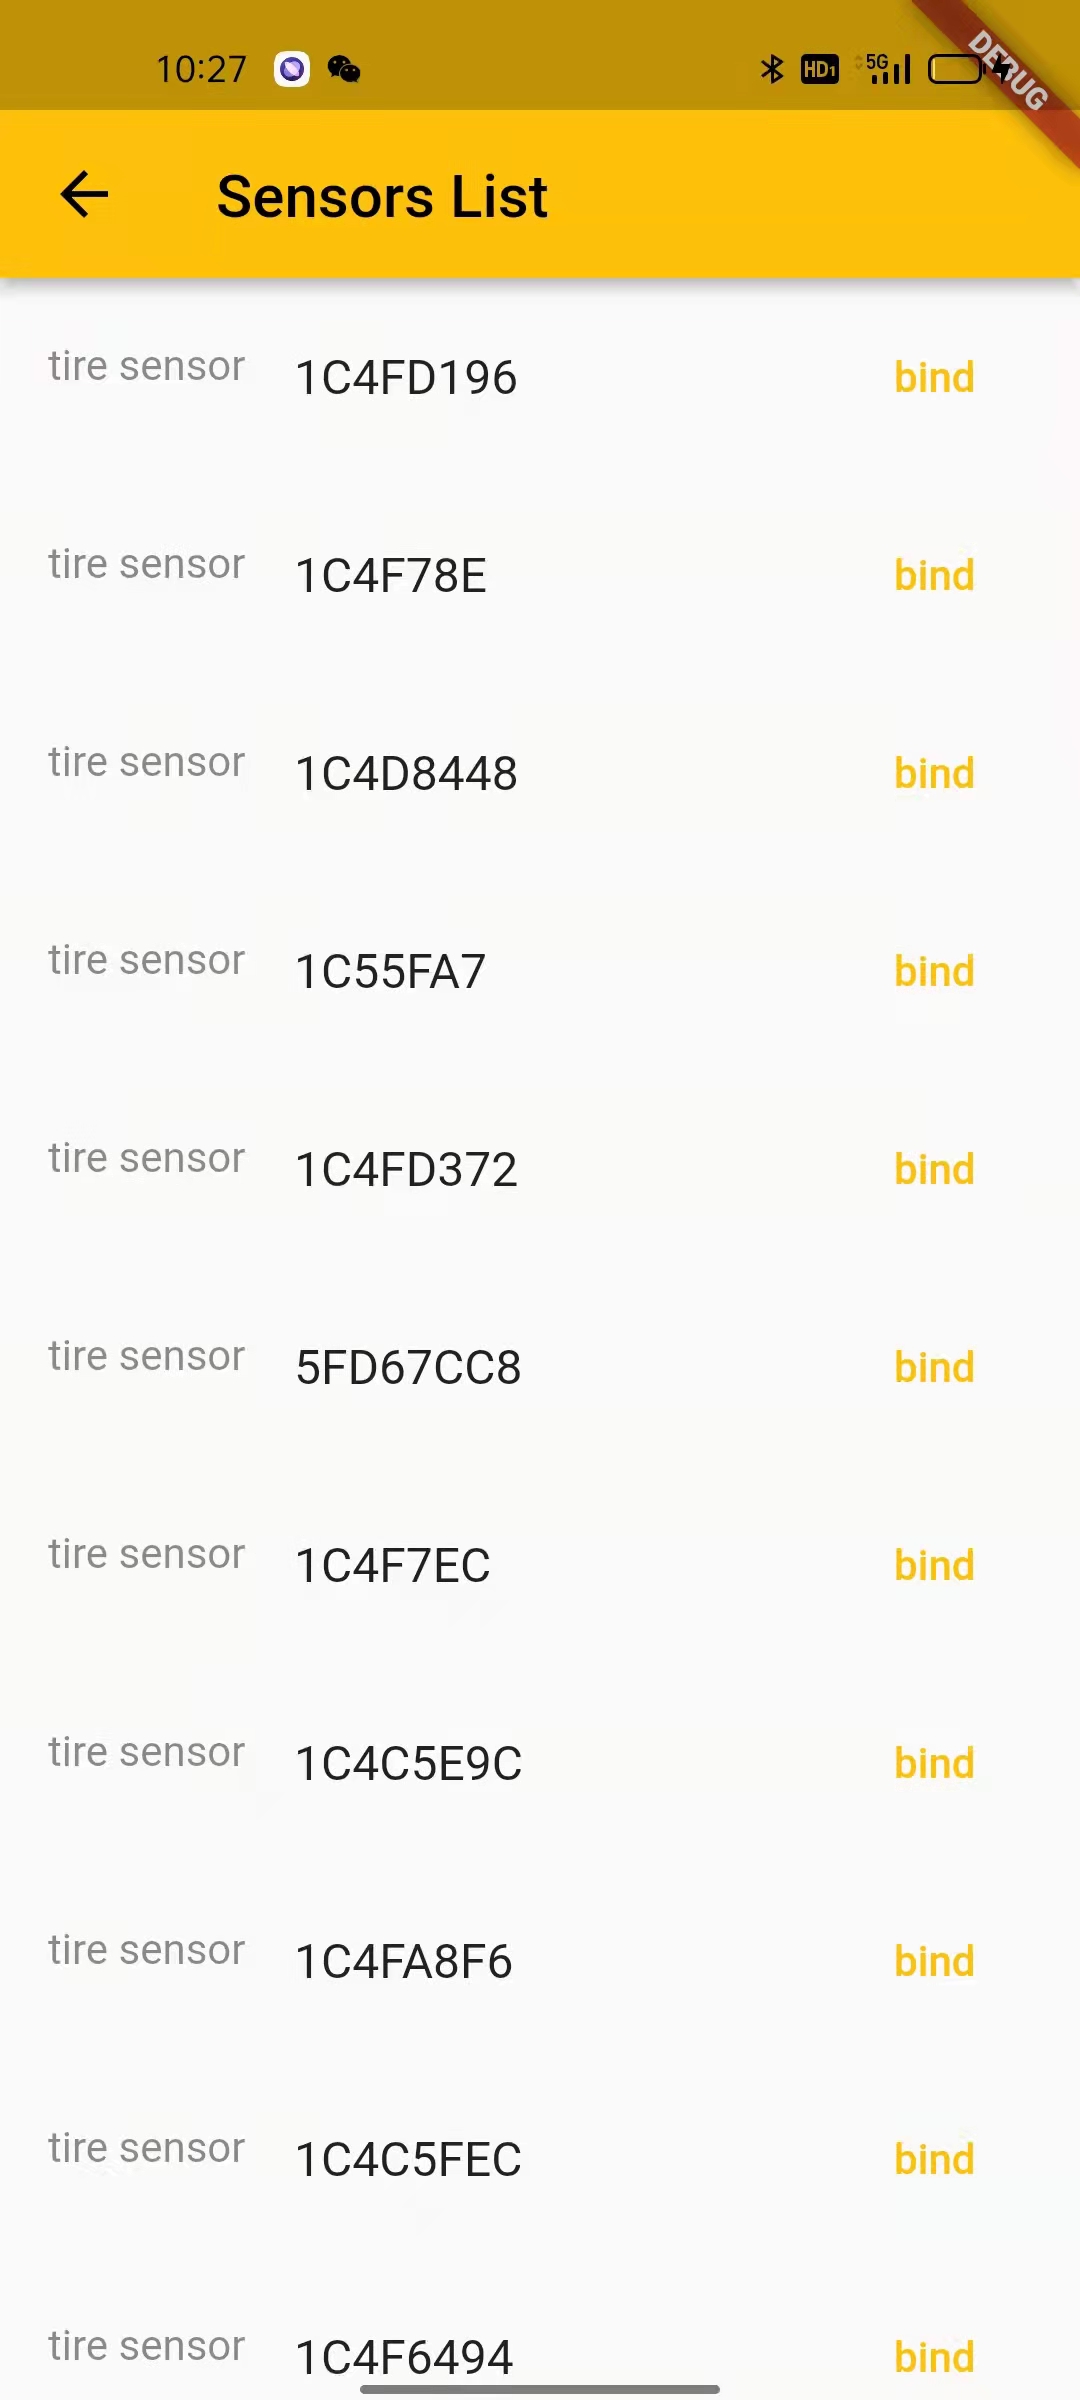 tpms app sensors list